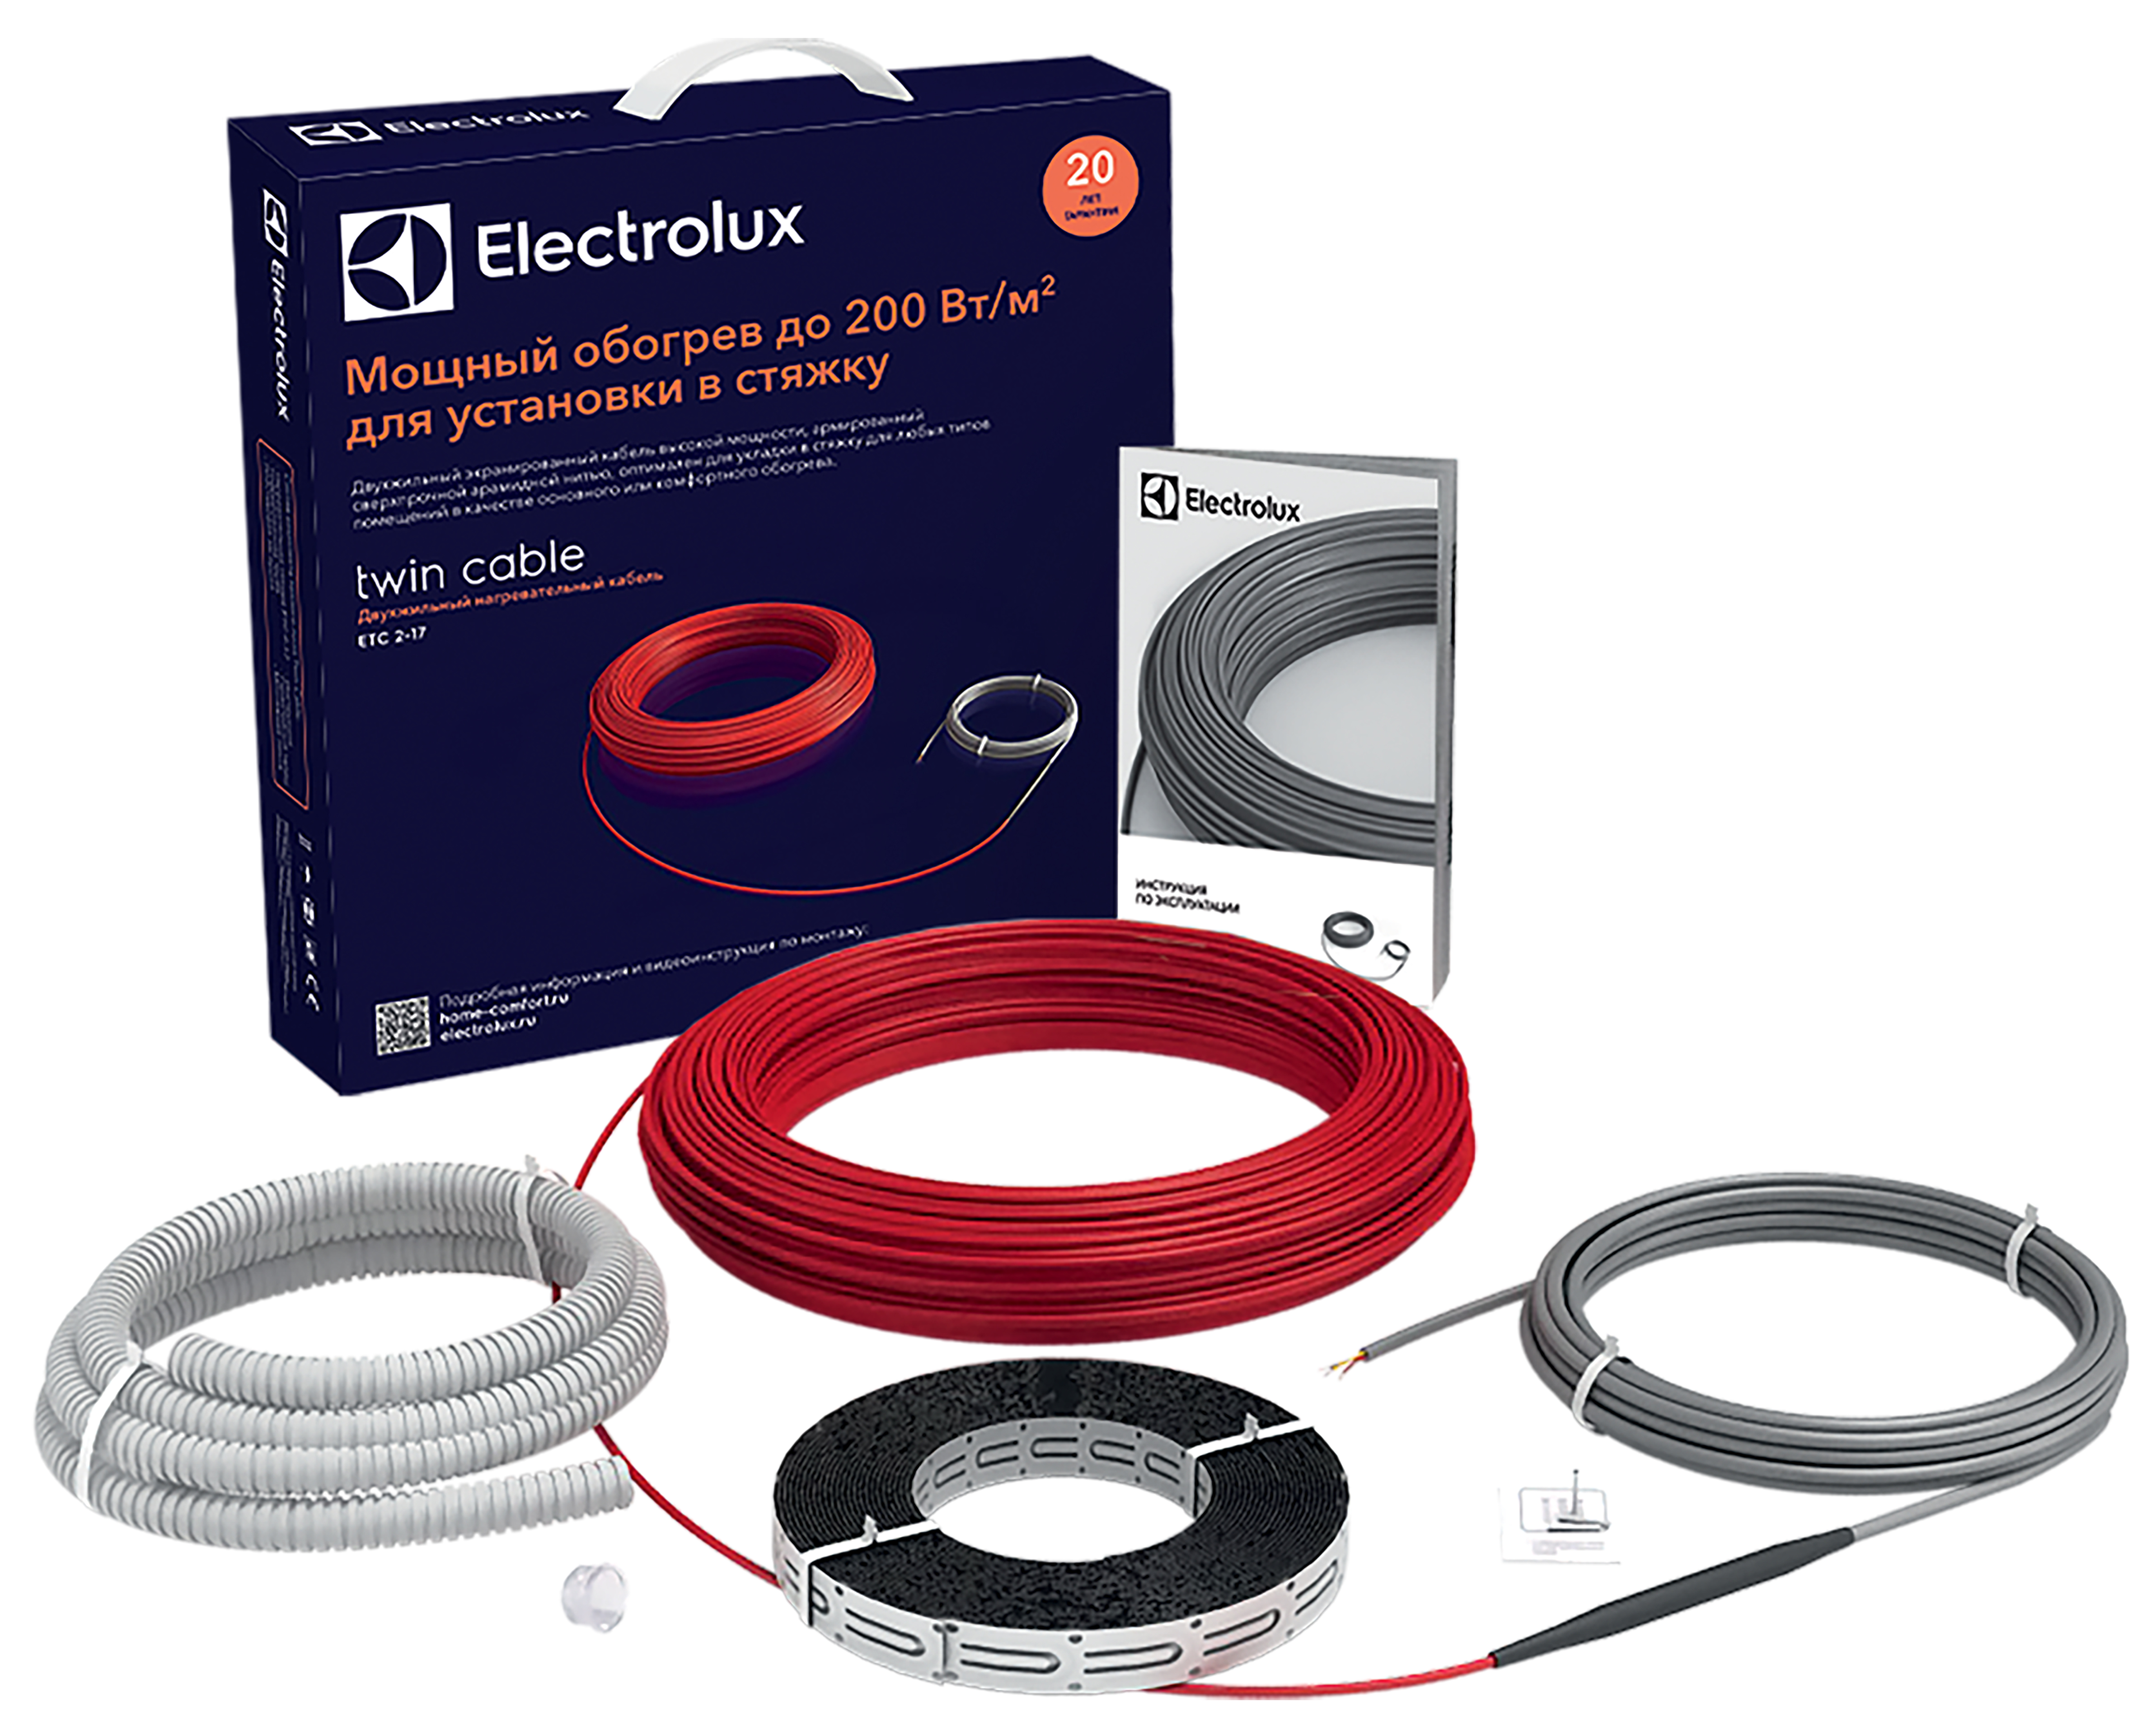 Теплый пол Electrolux под линолеум Electrolux Twin Cable ETC 2-17-600